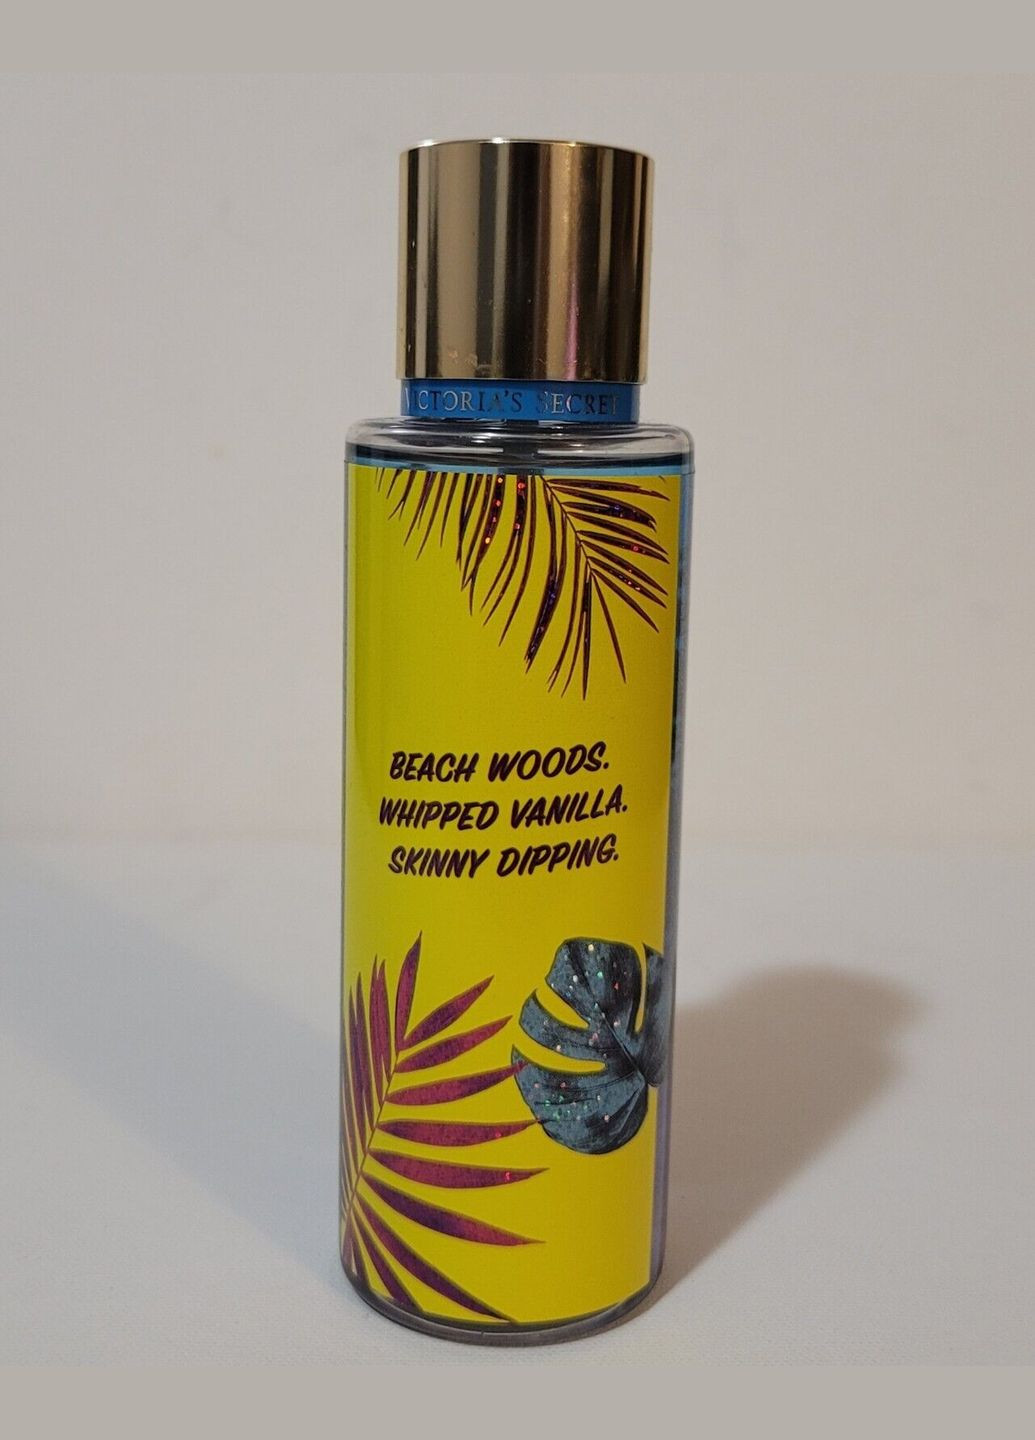 Набор парфюмированных спреев для тела Tropic Splash Island Fling Coconut Twist (3х250 мл) Victoria's Secret (279363887)